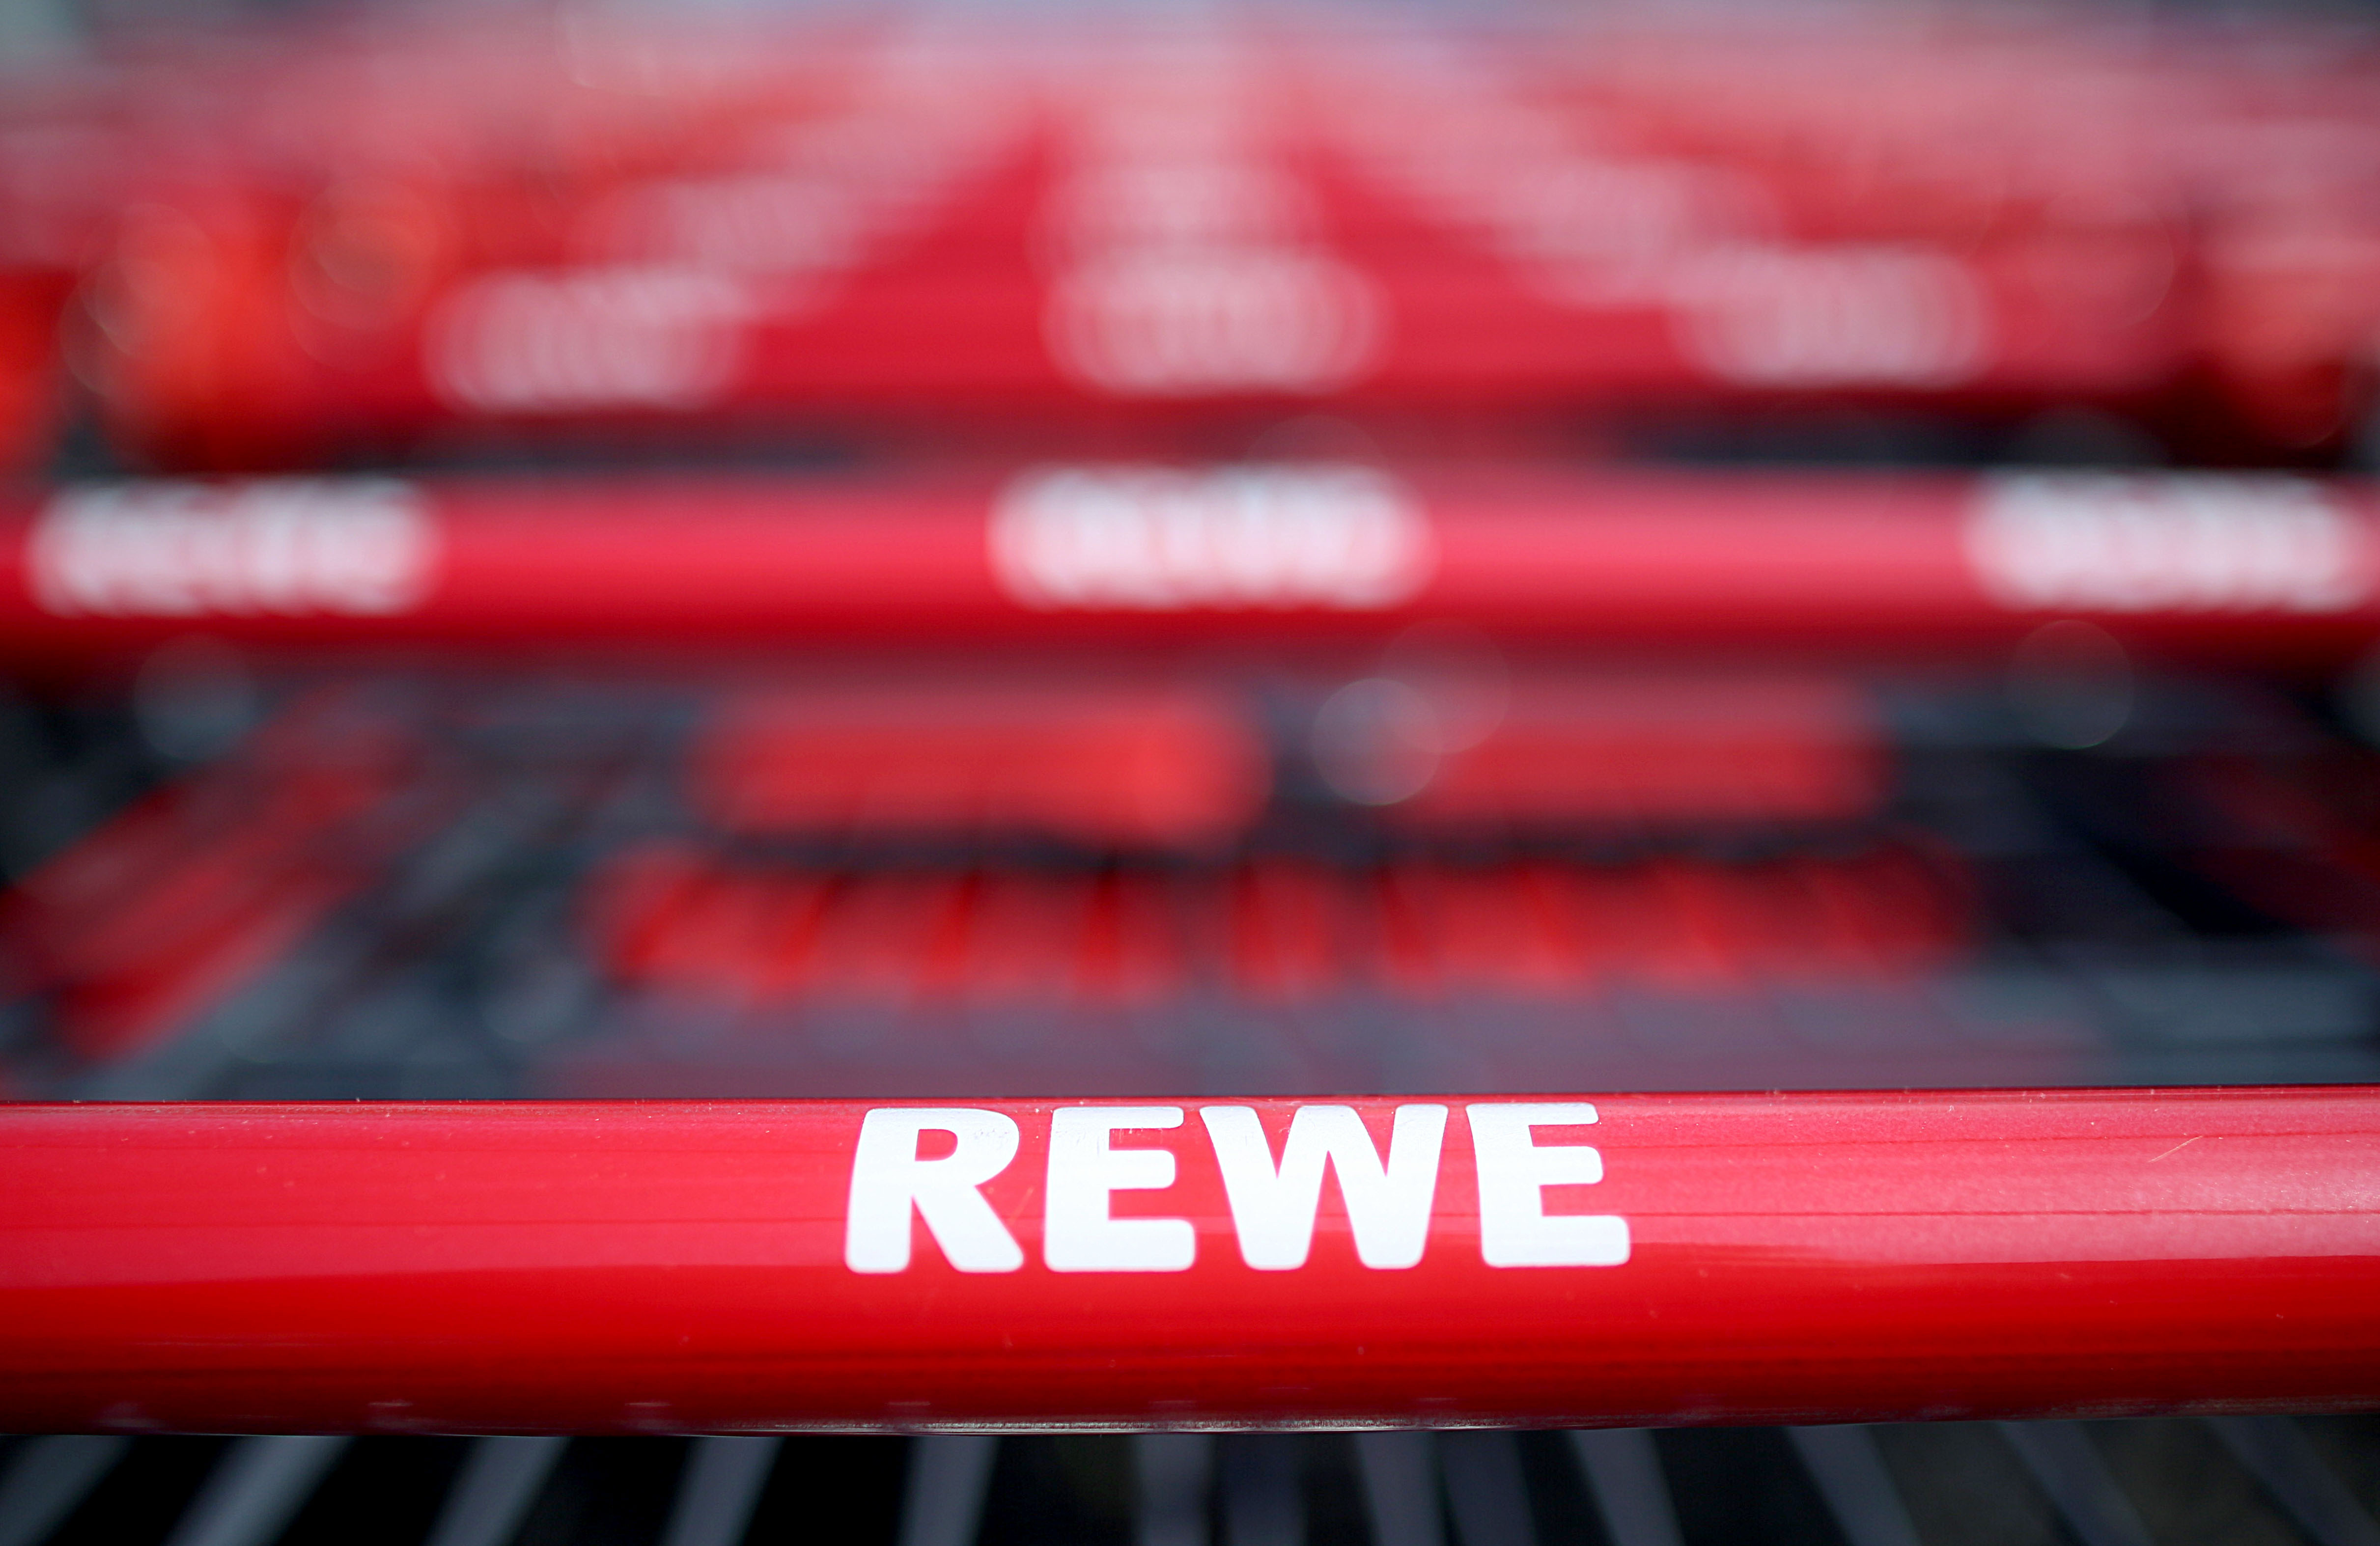 Einkaufswagen der Supermarkt-Kette Rewe | picture alliance/dpa